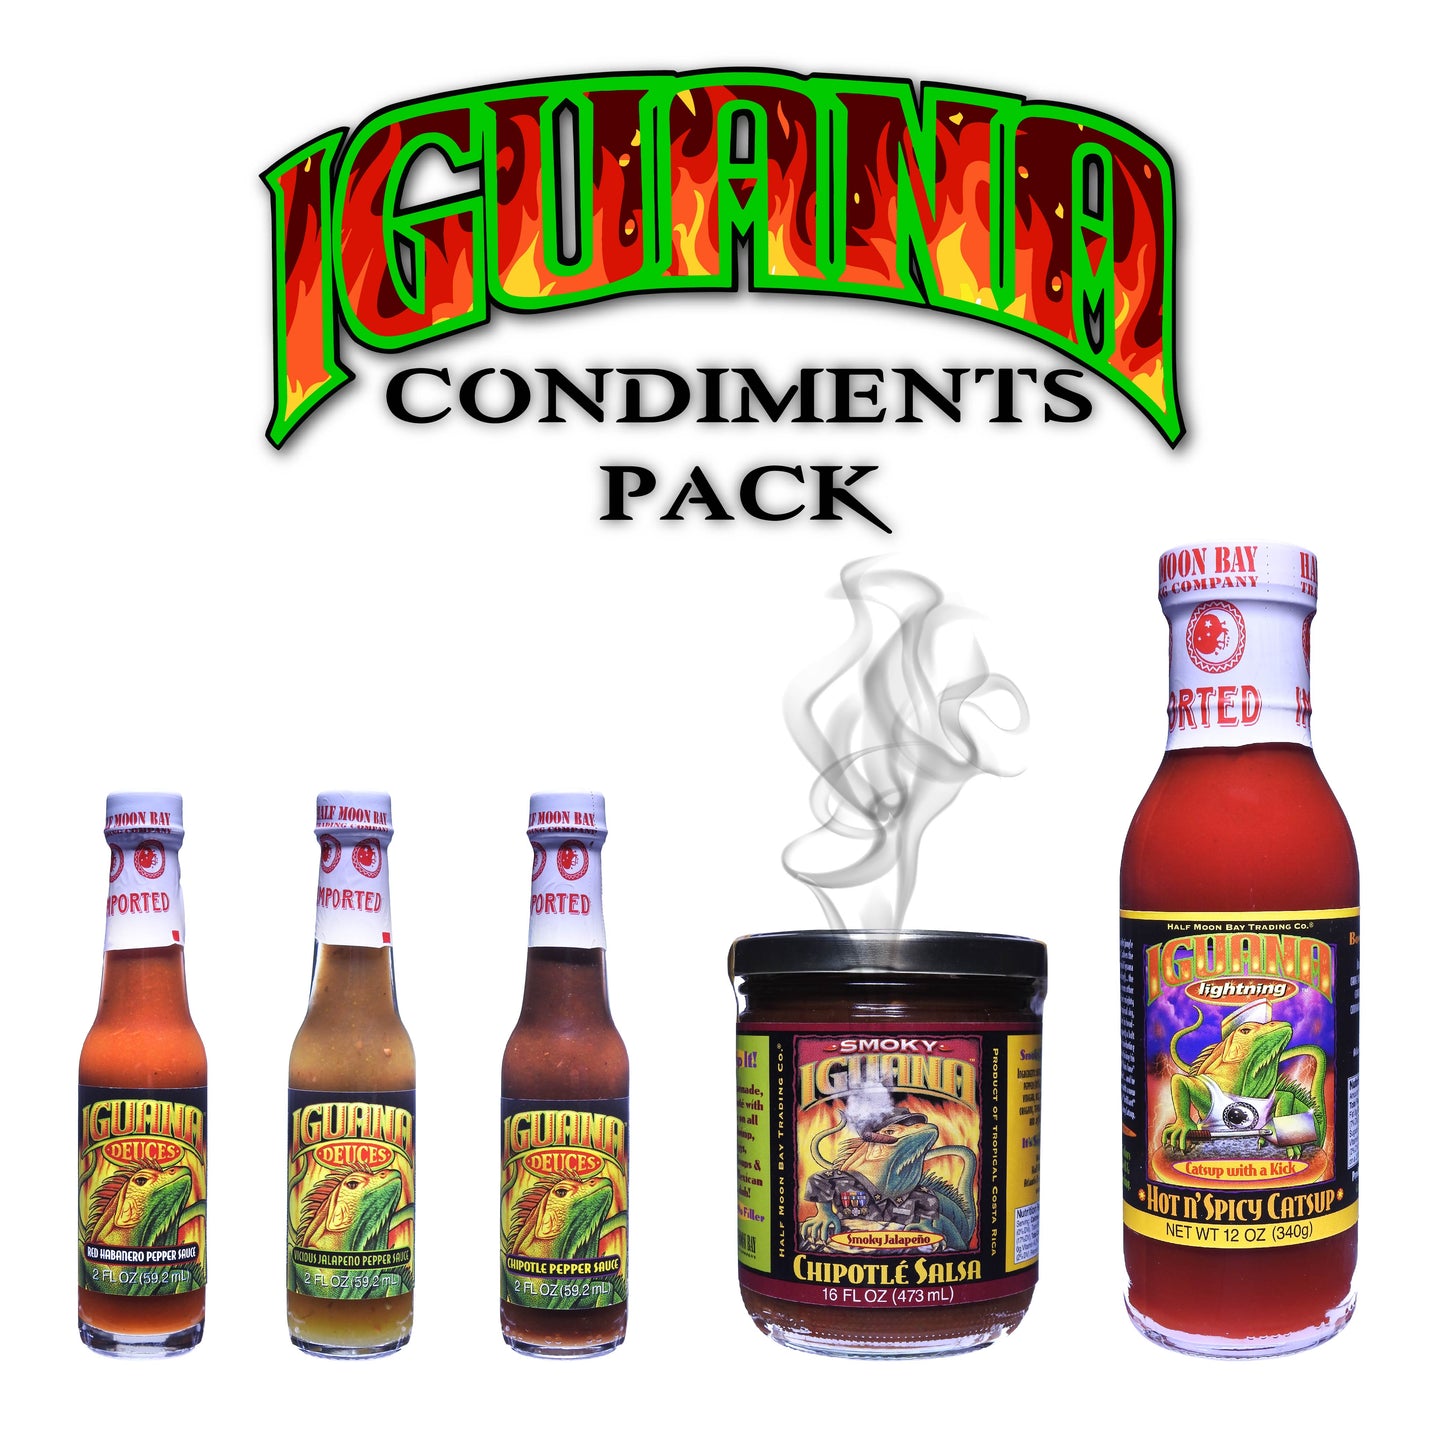 XCOL-004: Iguana Condiments Pack